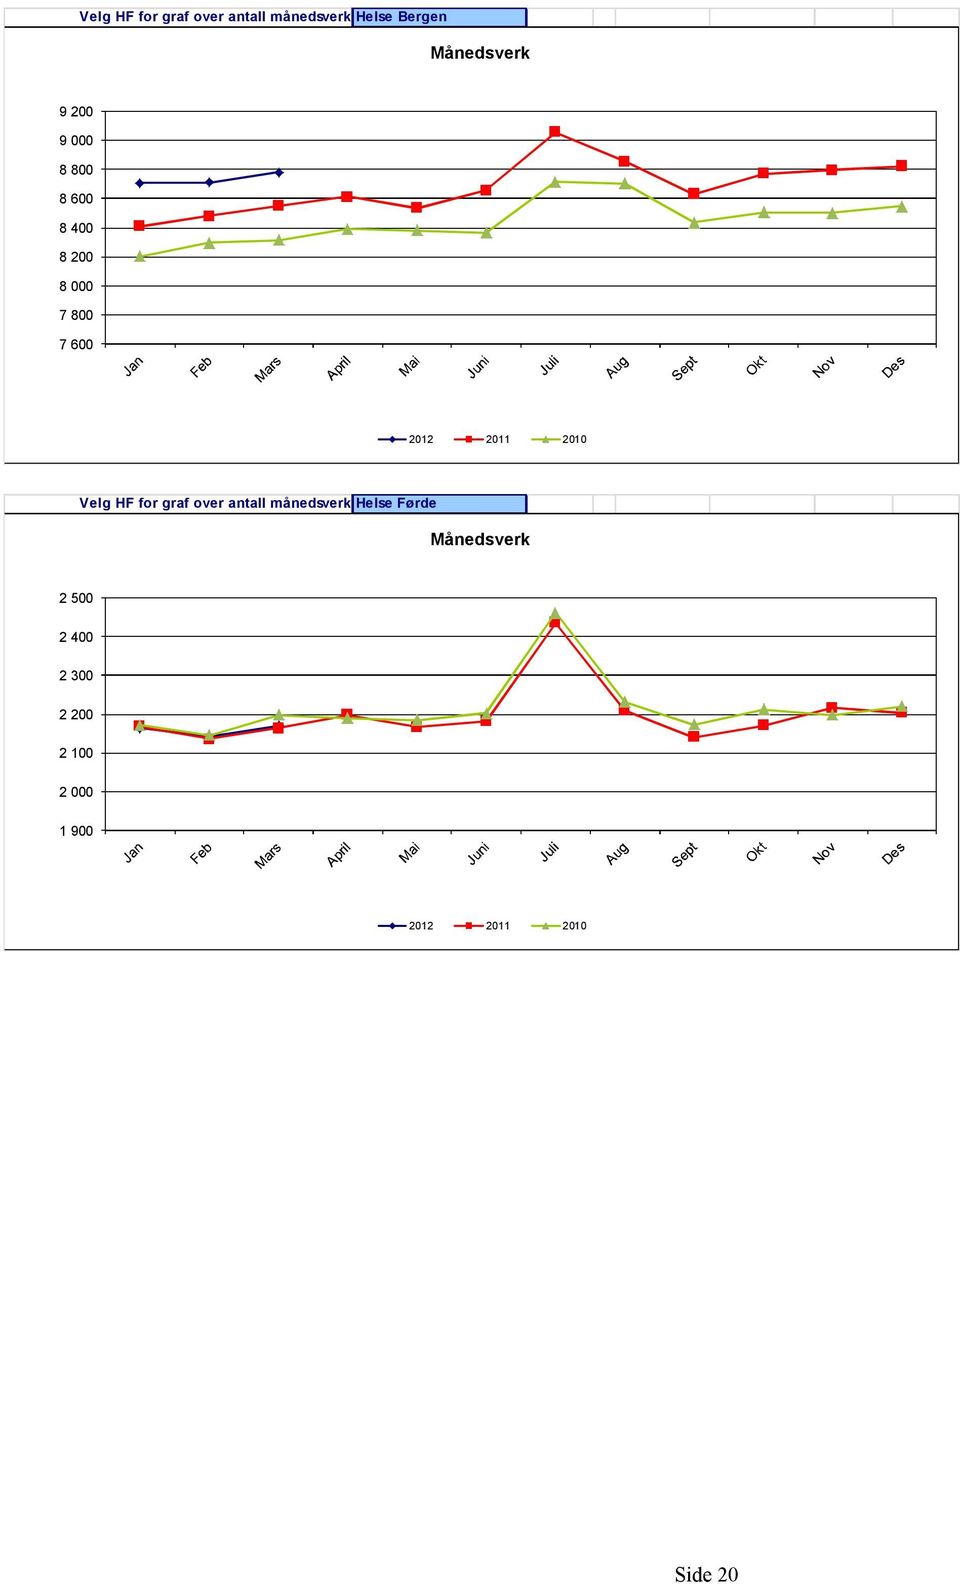 2010 Velg HF for graf over antall månedsverk Helse Førde